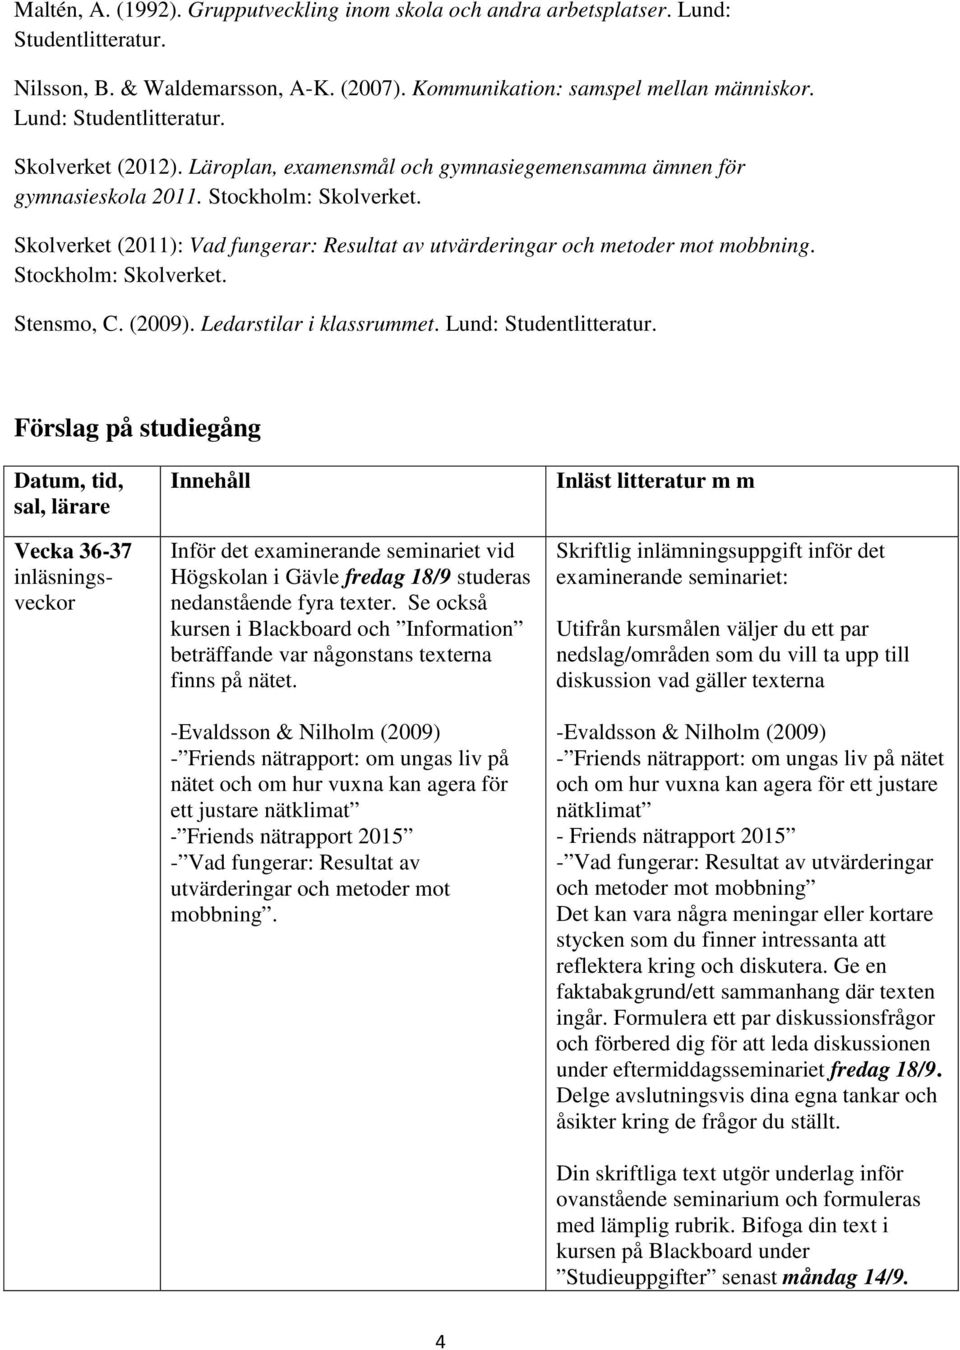 Skolverket (2011): Vad fungerar: Resultat av utvärderingar och metoder mot mobbning. Stockholm: Skolverket. Stensmo, C. (2009). Ledarstilar i klassrummet. Lund: Studentlitteratur.